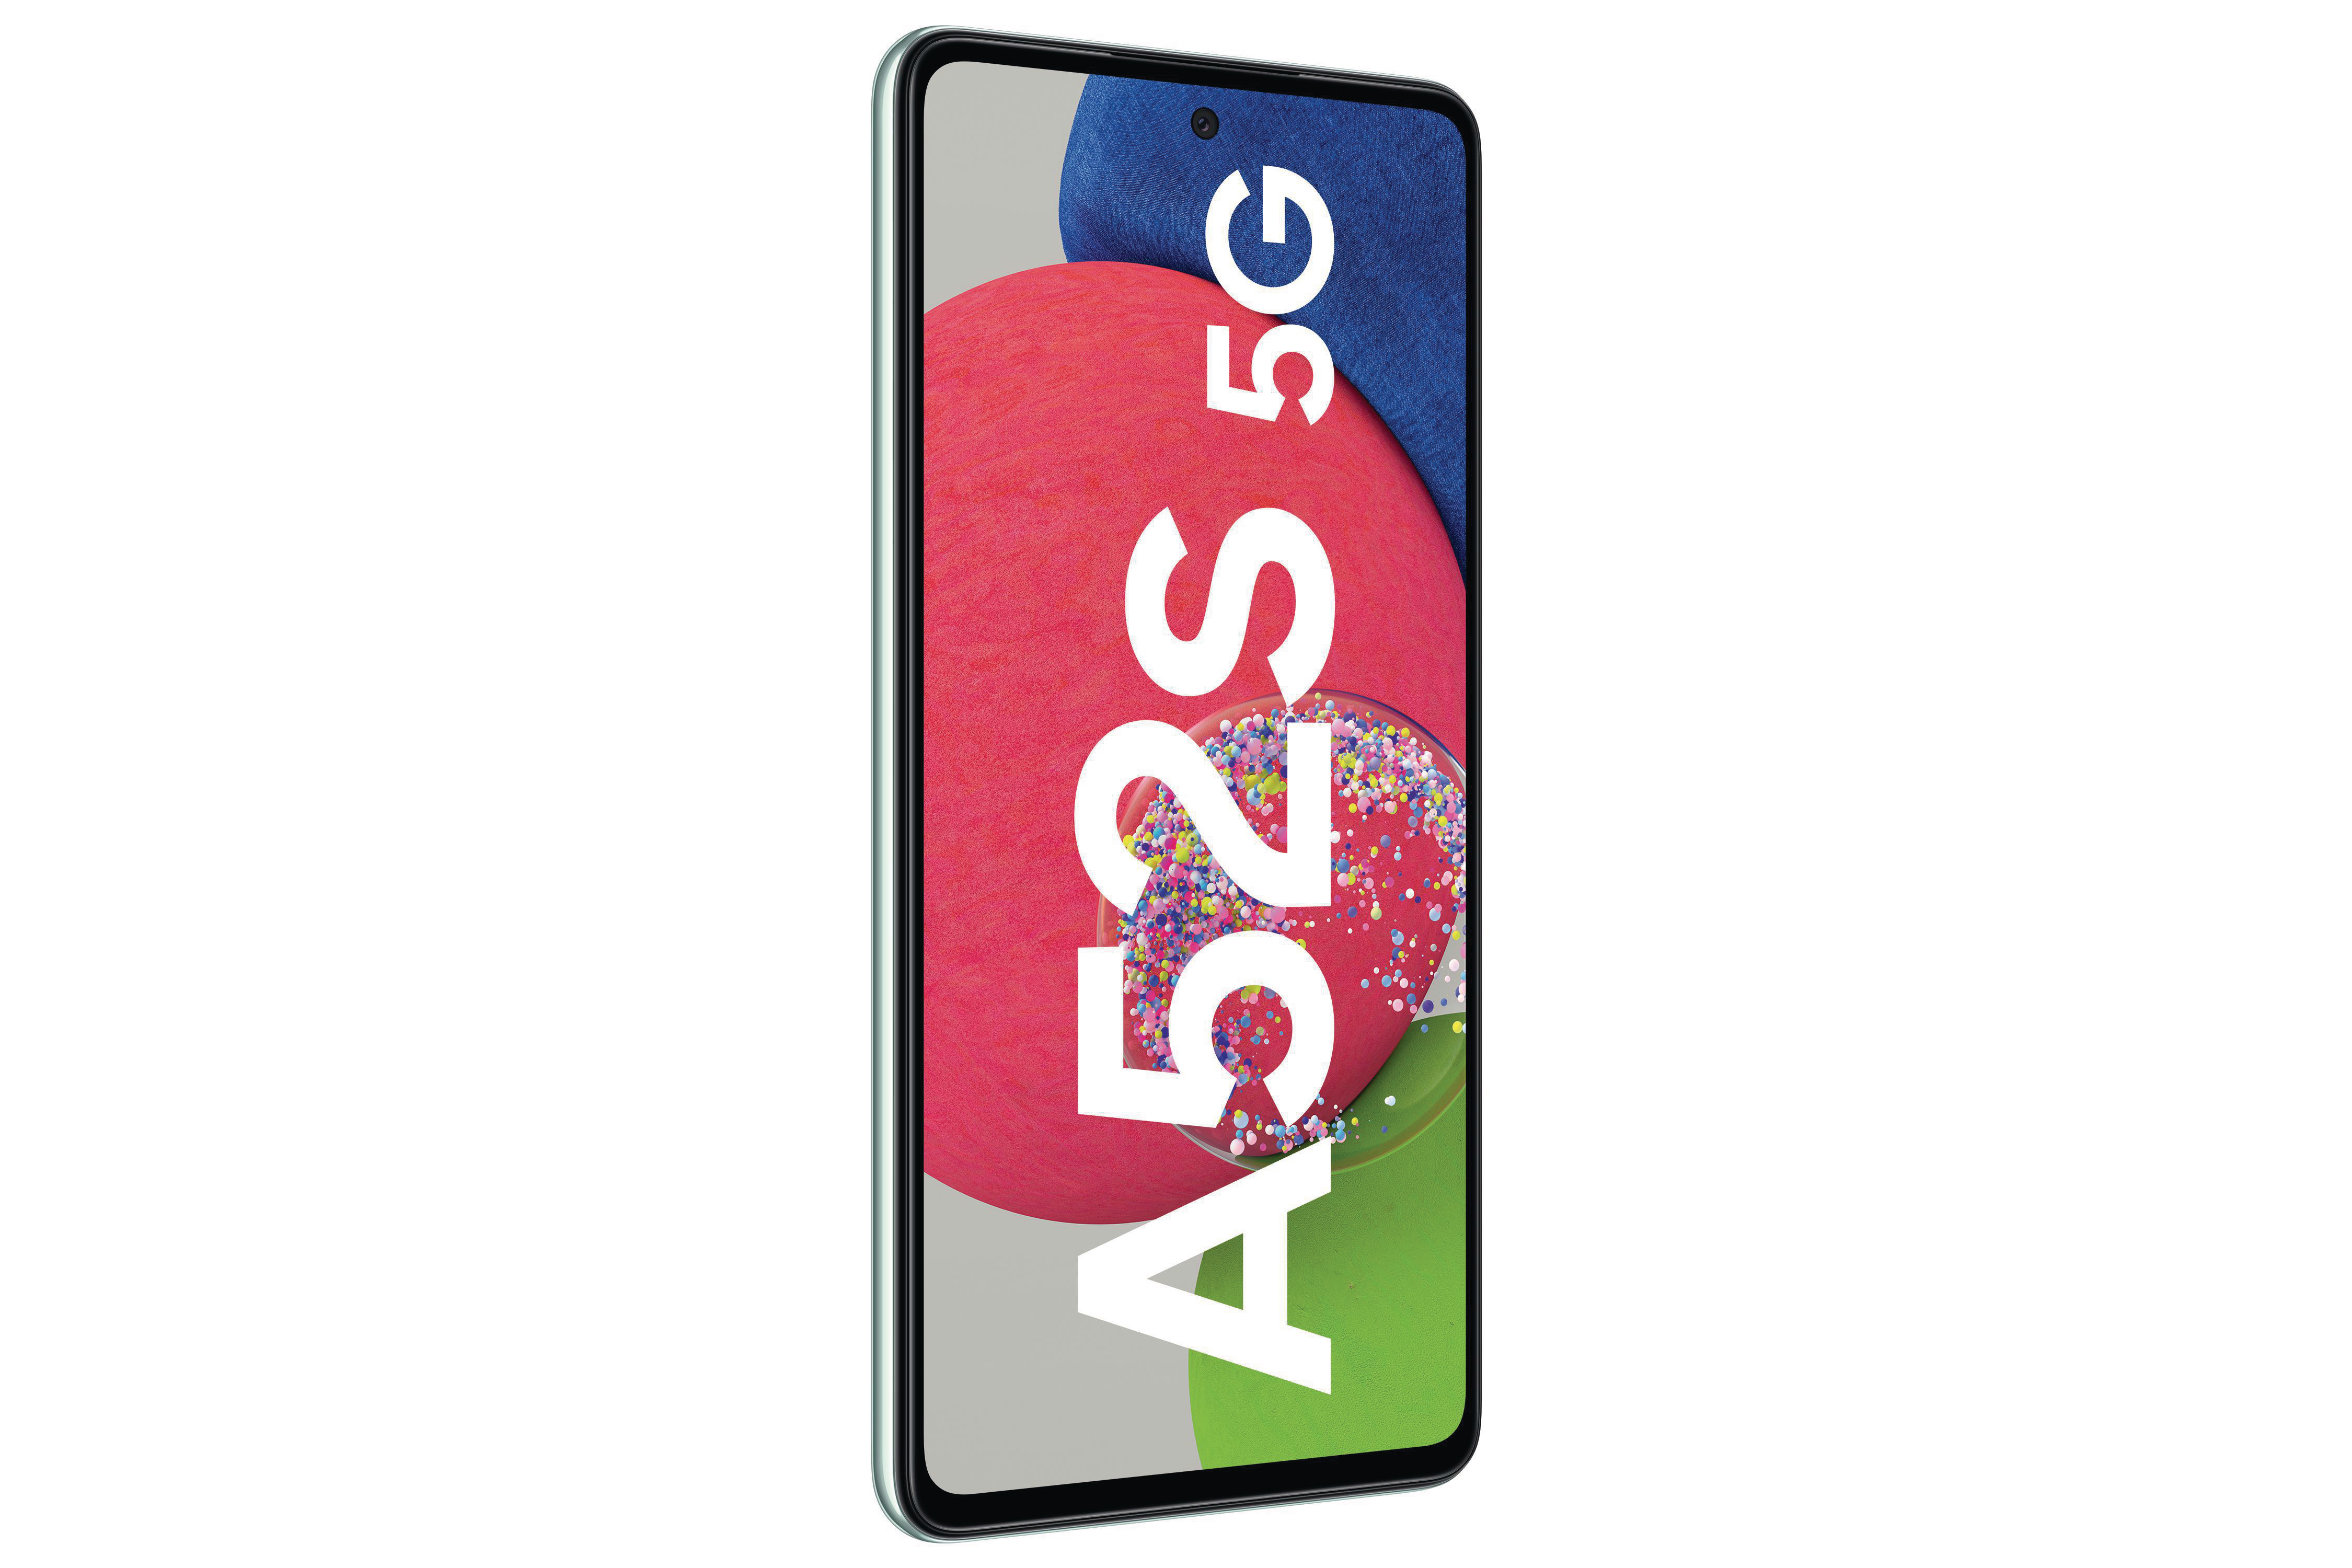 SIM Awesome Dual Green 256 GB 5G SAMSUNG Galaxy A52s